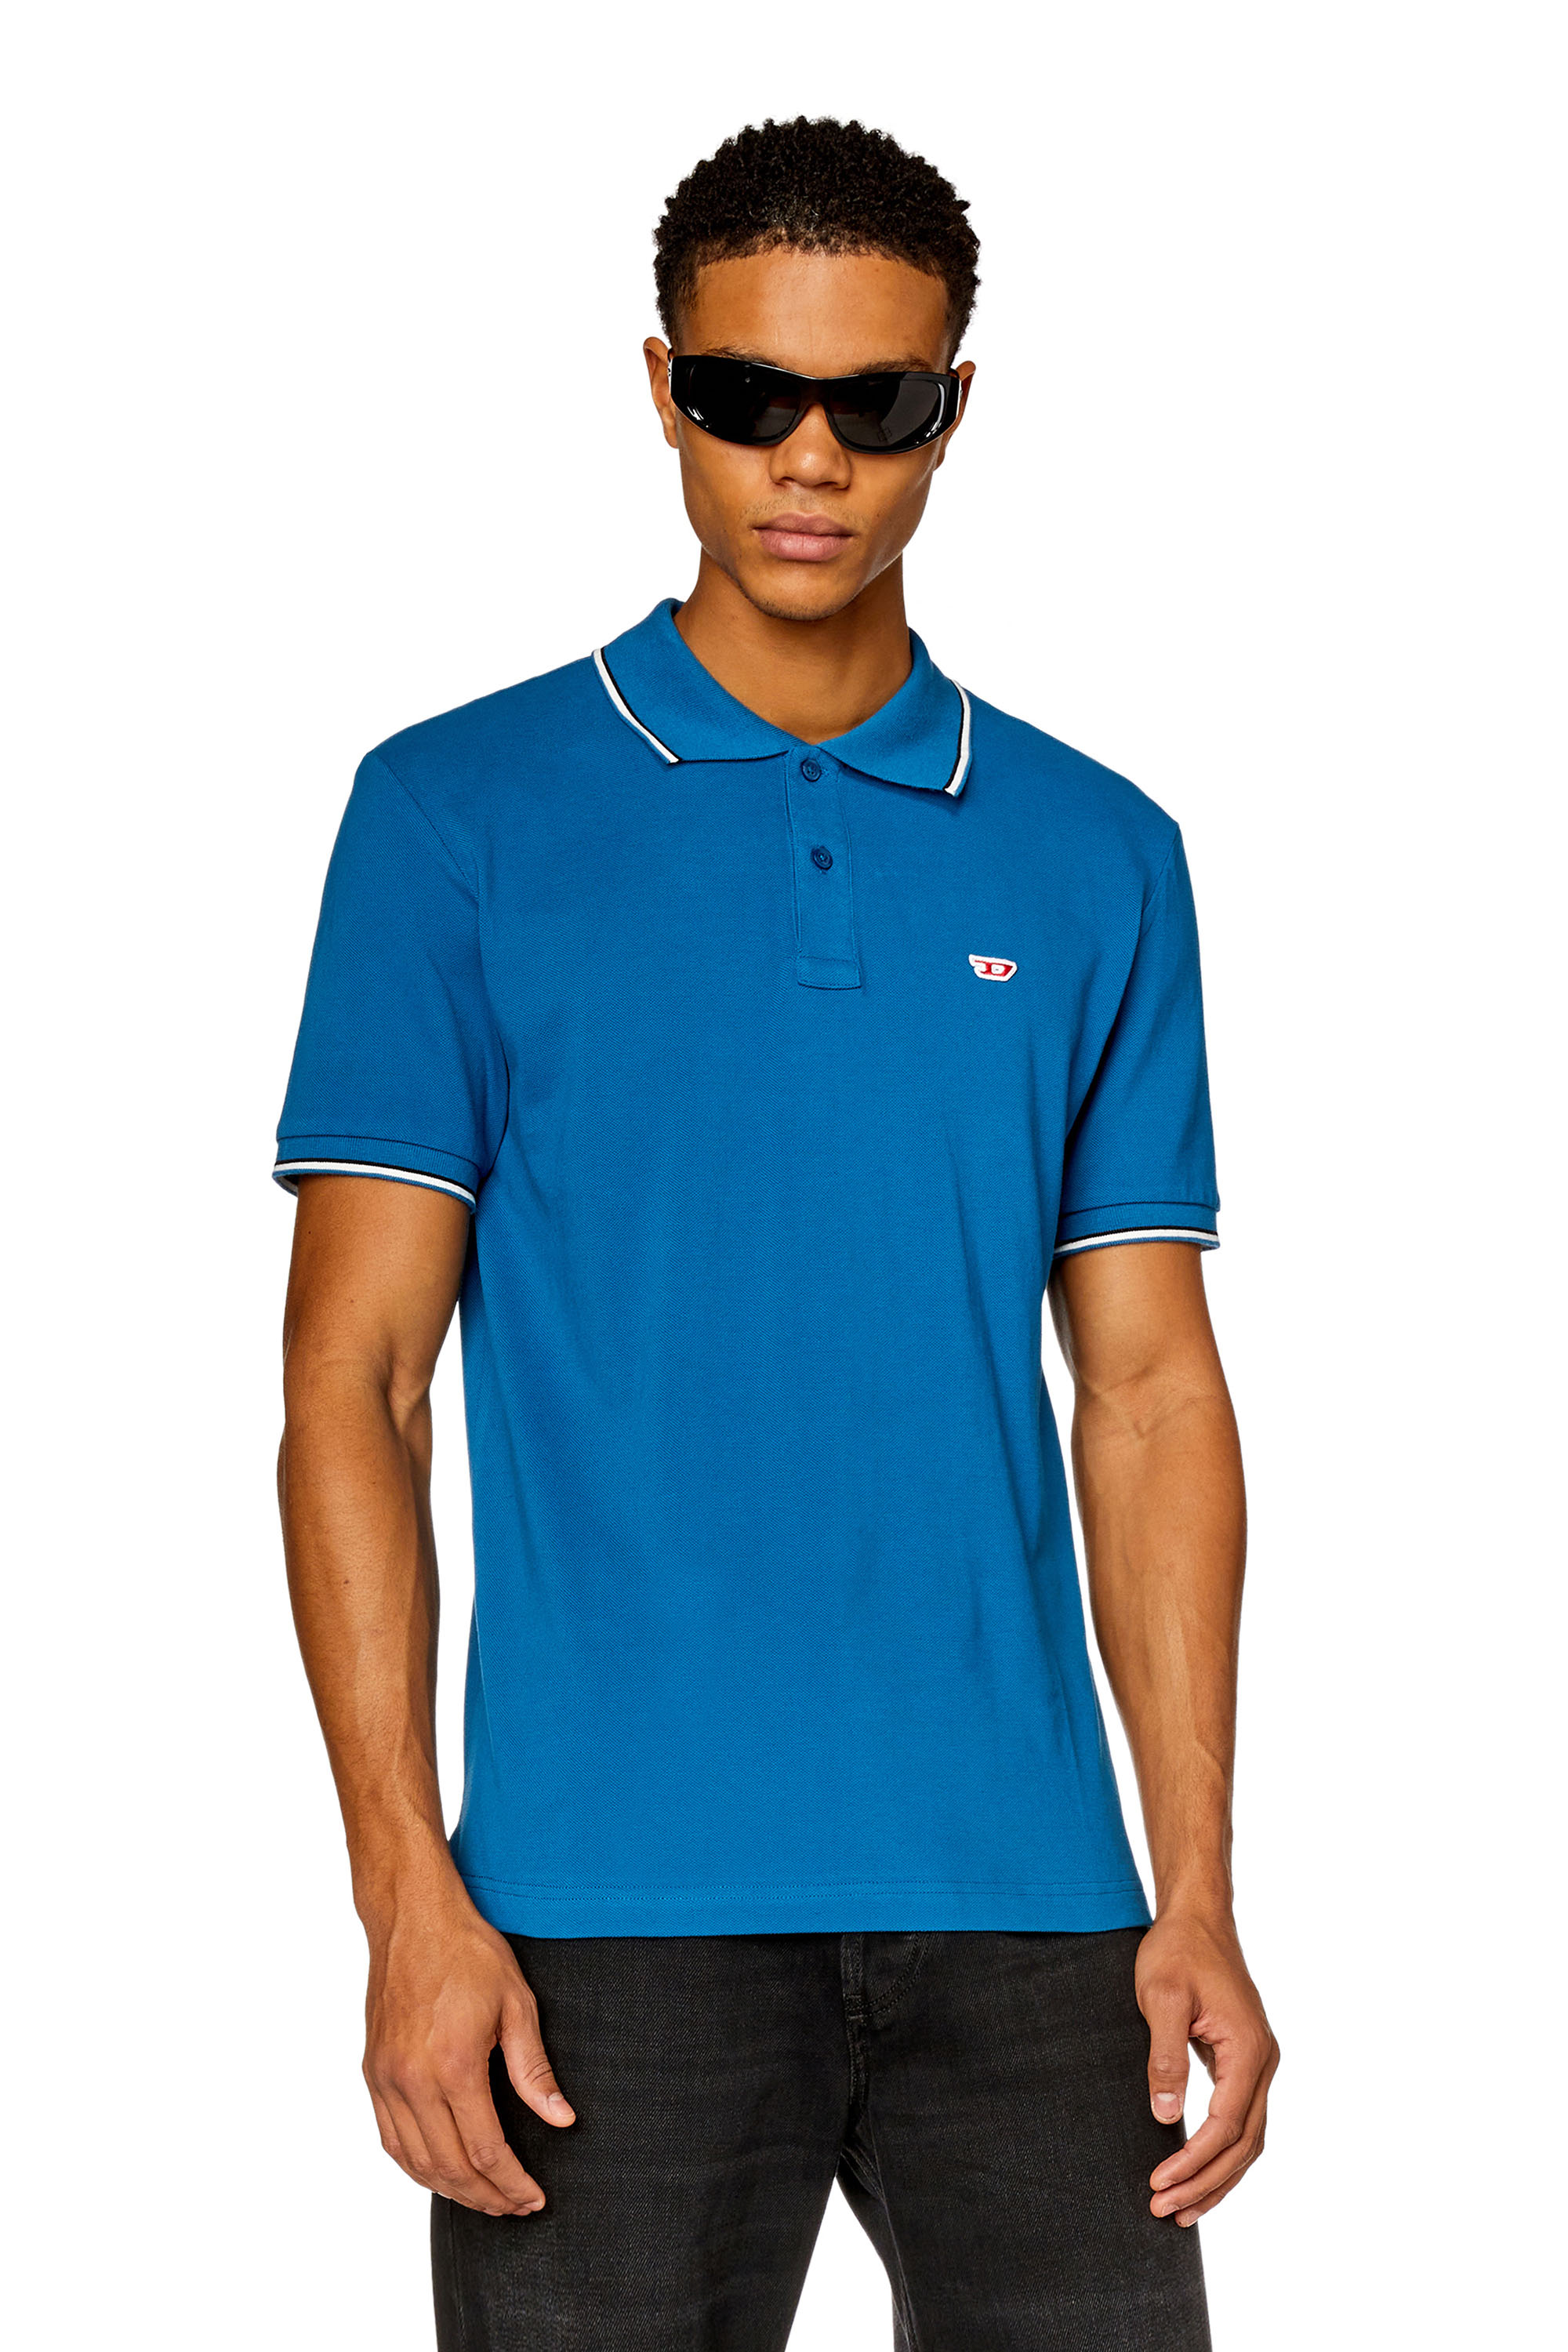 Diesel - Camiseta polo con ribetes a rayas - Polos - Hombre - Azul marino